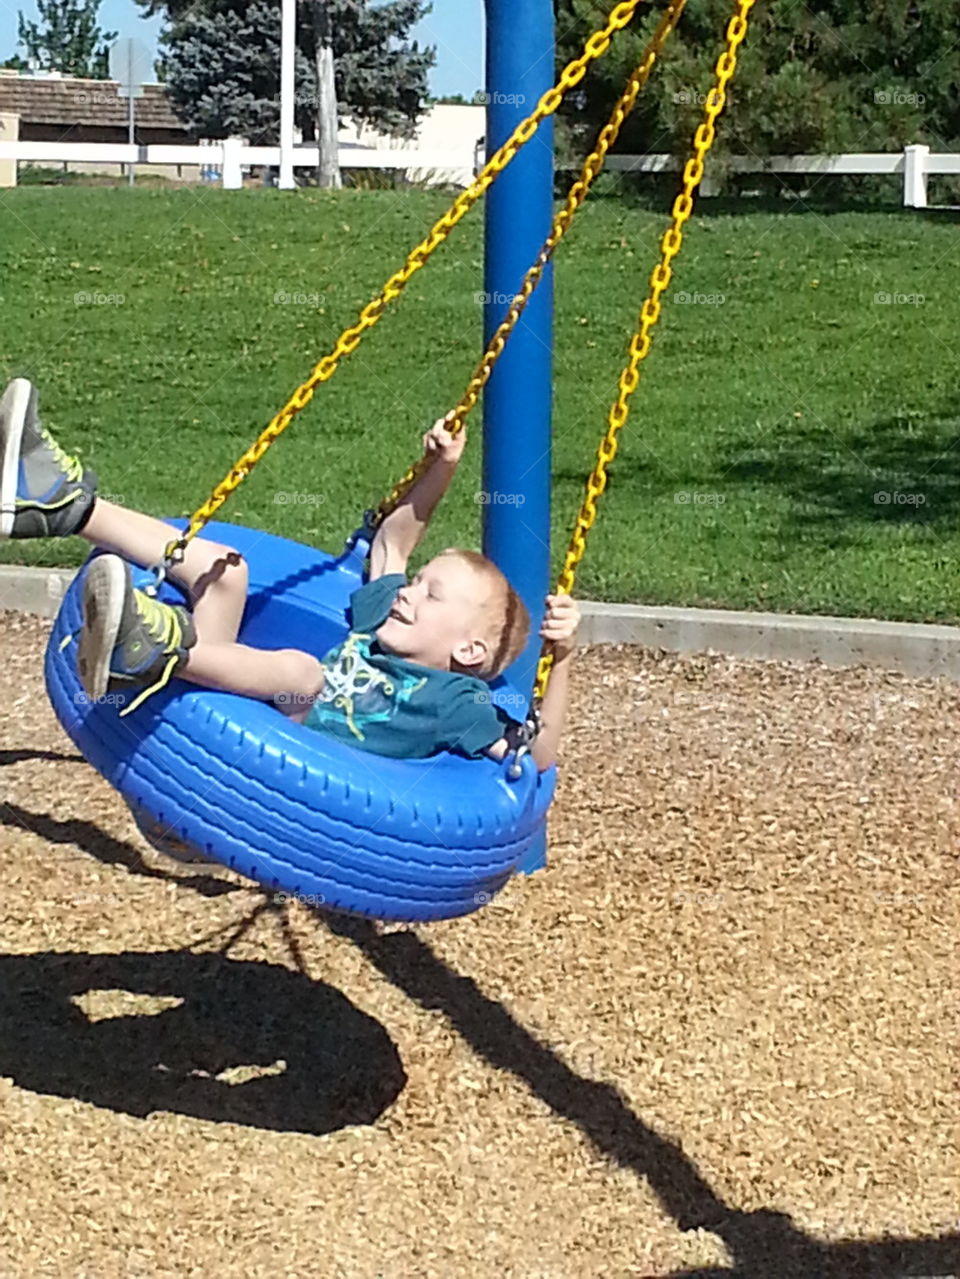  fun at the park